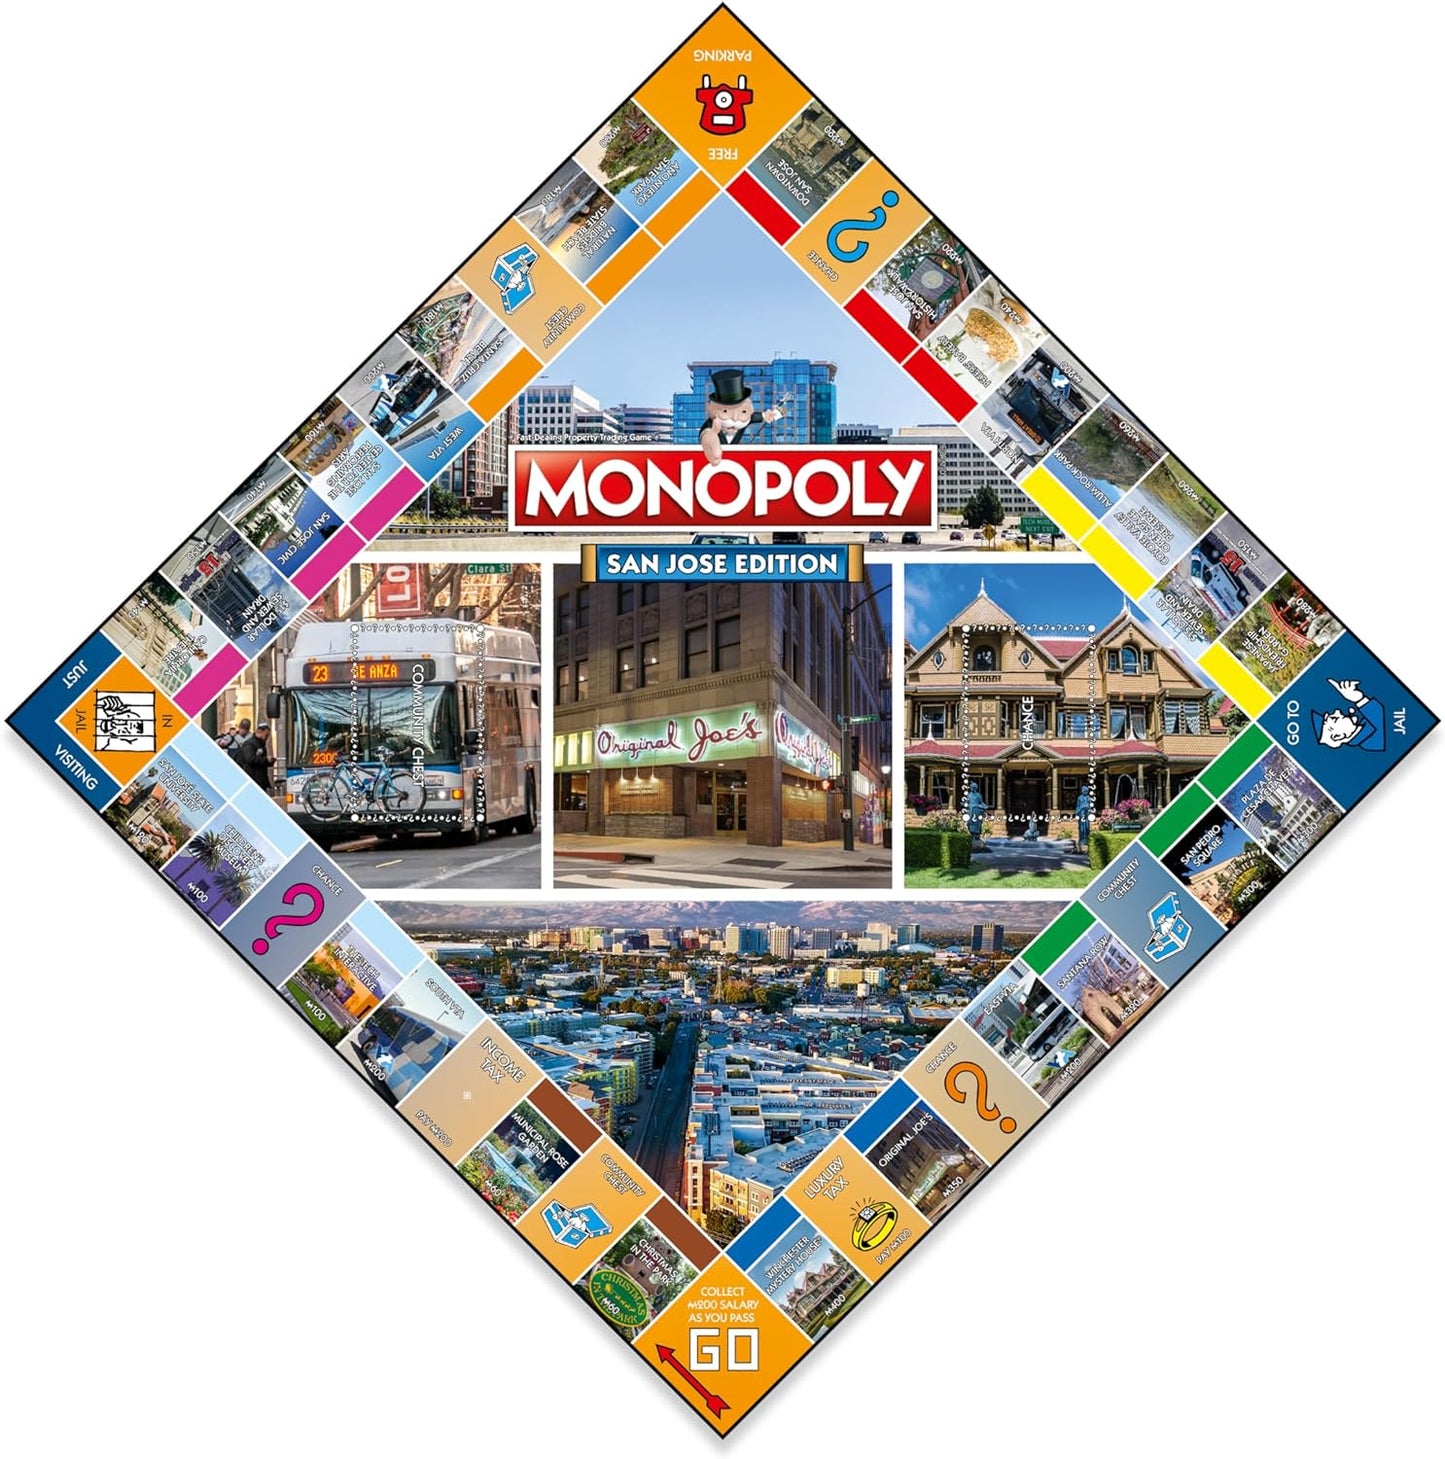 Monopoly San Jose Edition